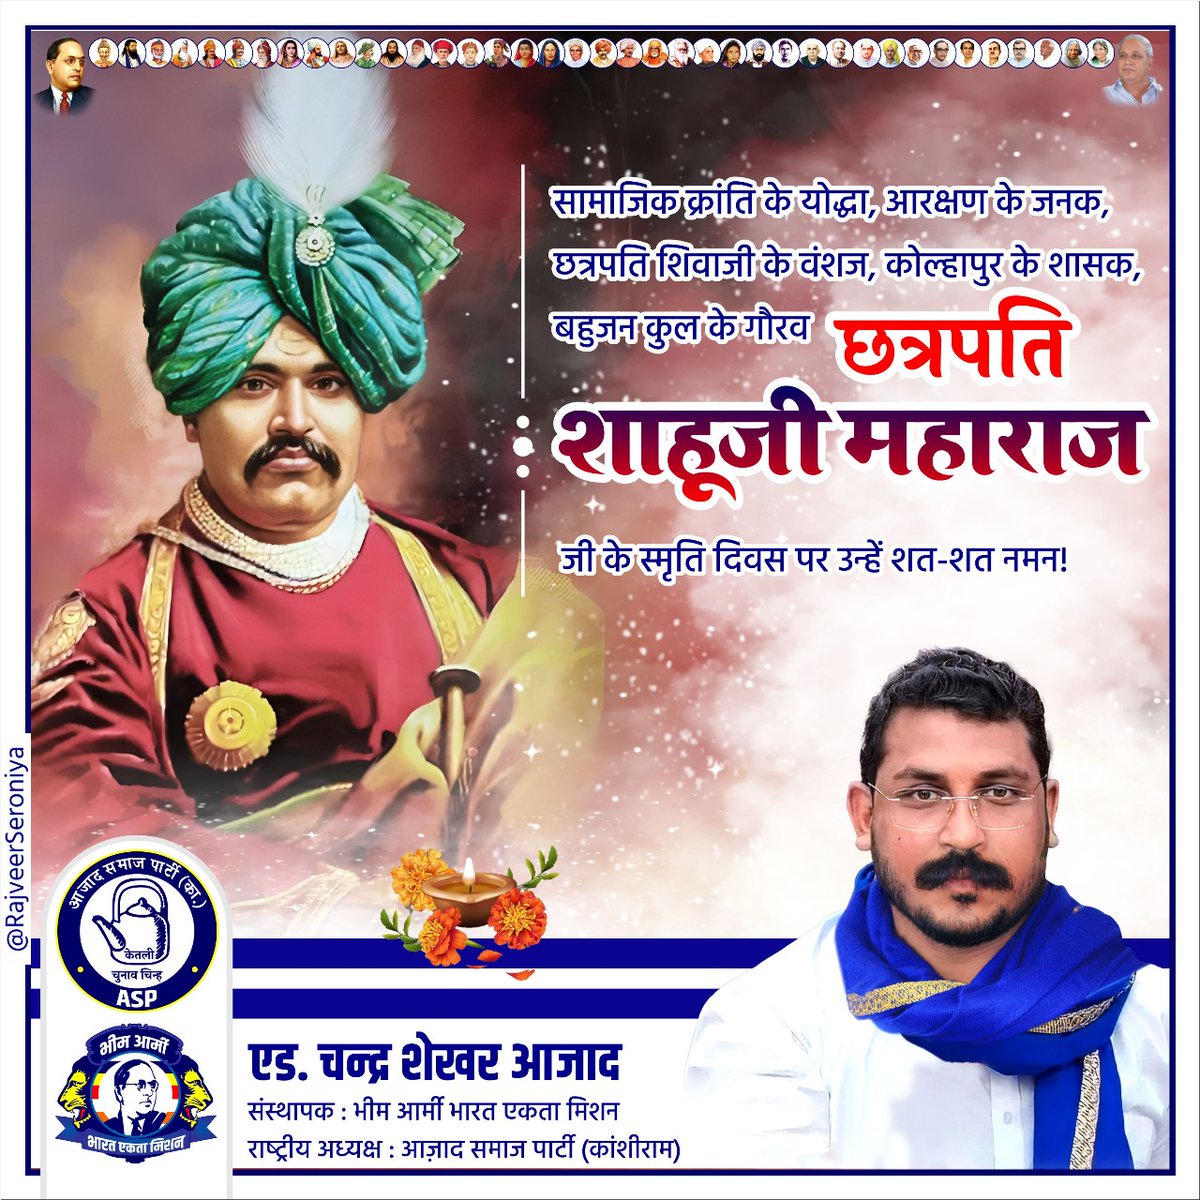 सामाजिक क्रांति के योद्धा, आरक्षण के जनक, छत्रपति शिवाजी के वंशज, कोल्हापुर के शासक, बहुजन कुल के गौरव छत्रपति शाहूजी महाराज जी के स्मृति दिवस पर उन्हें शत-शत नमन।